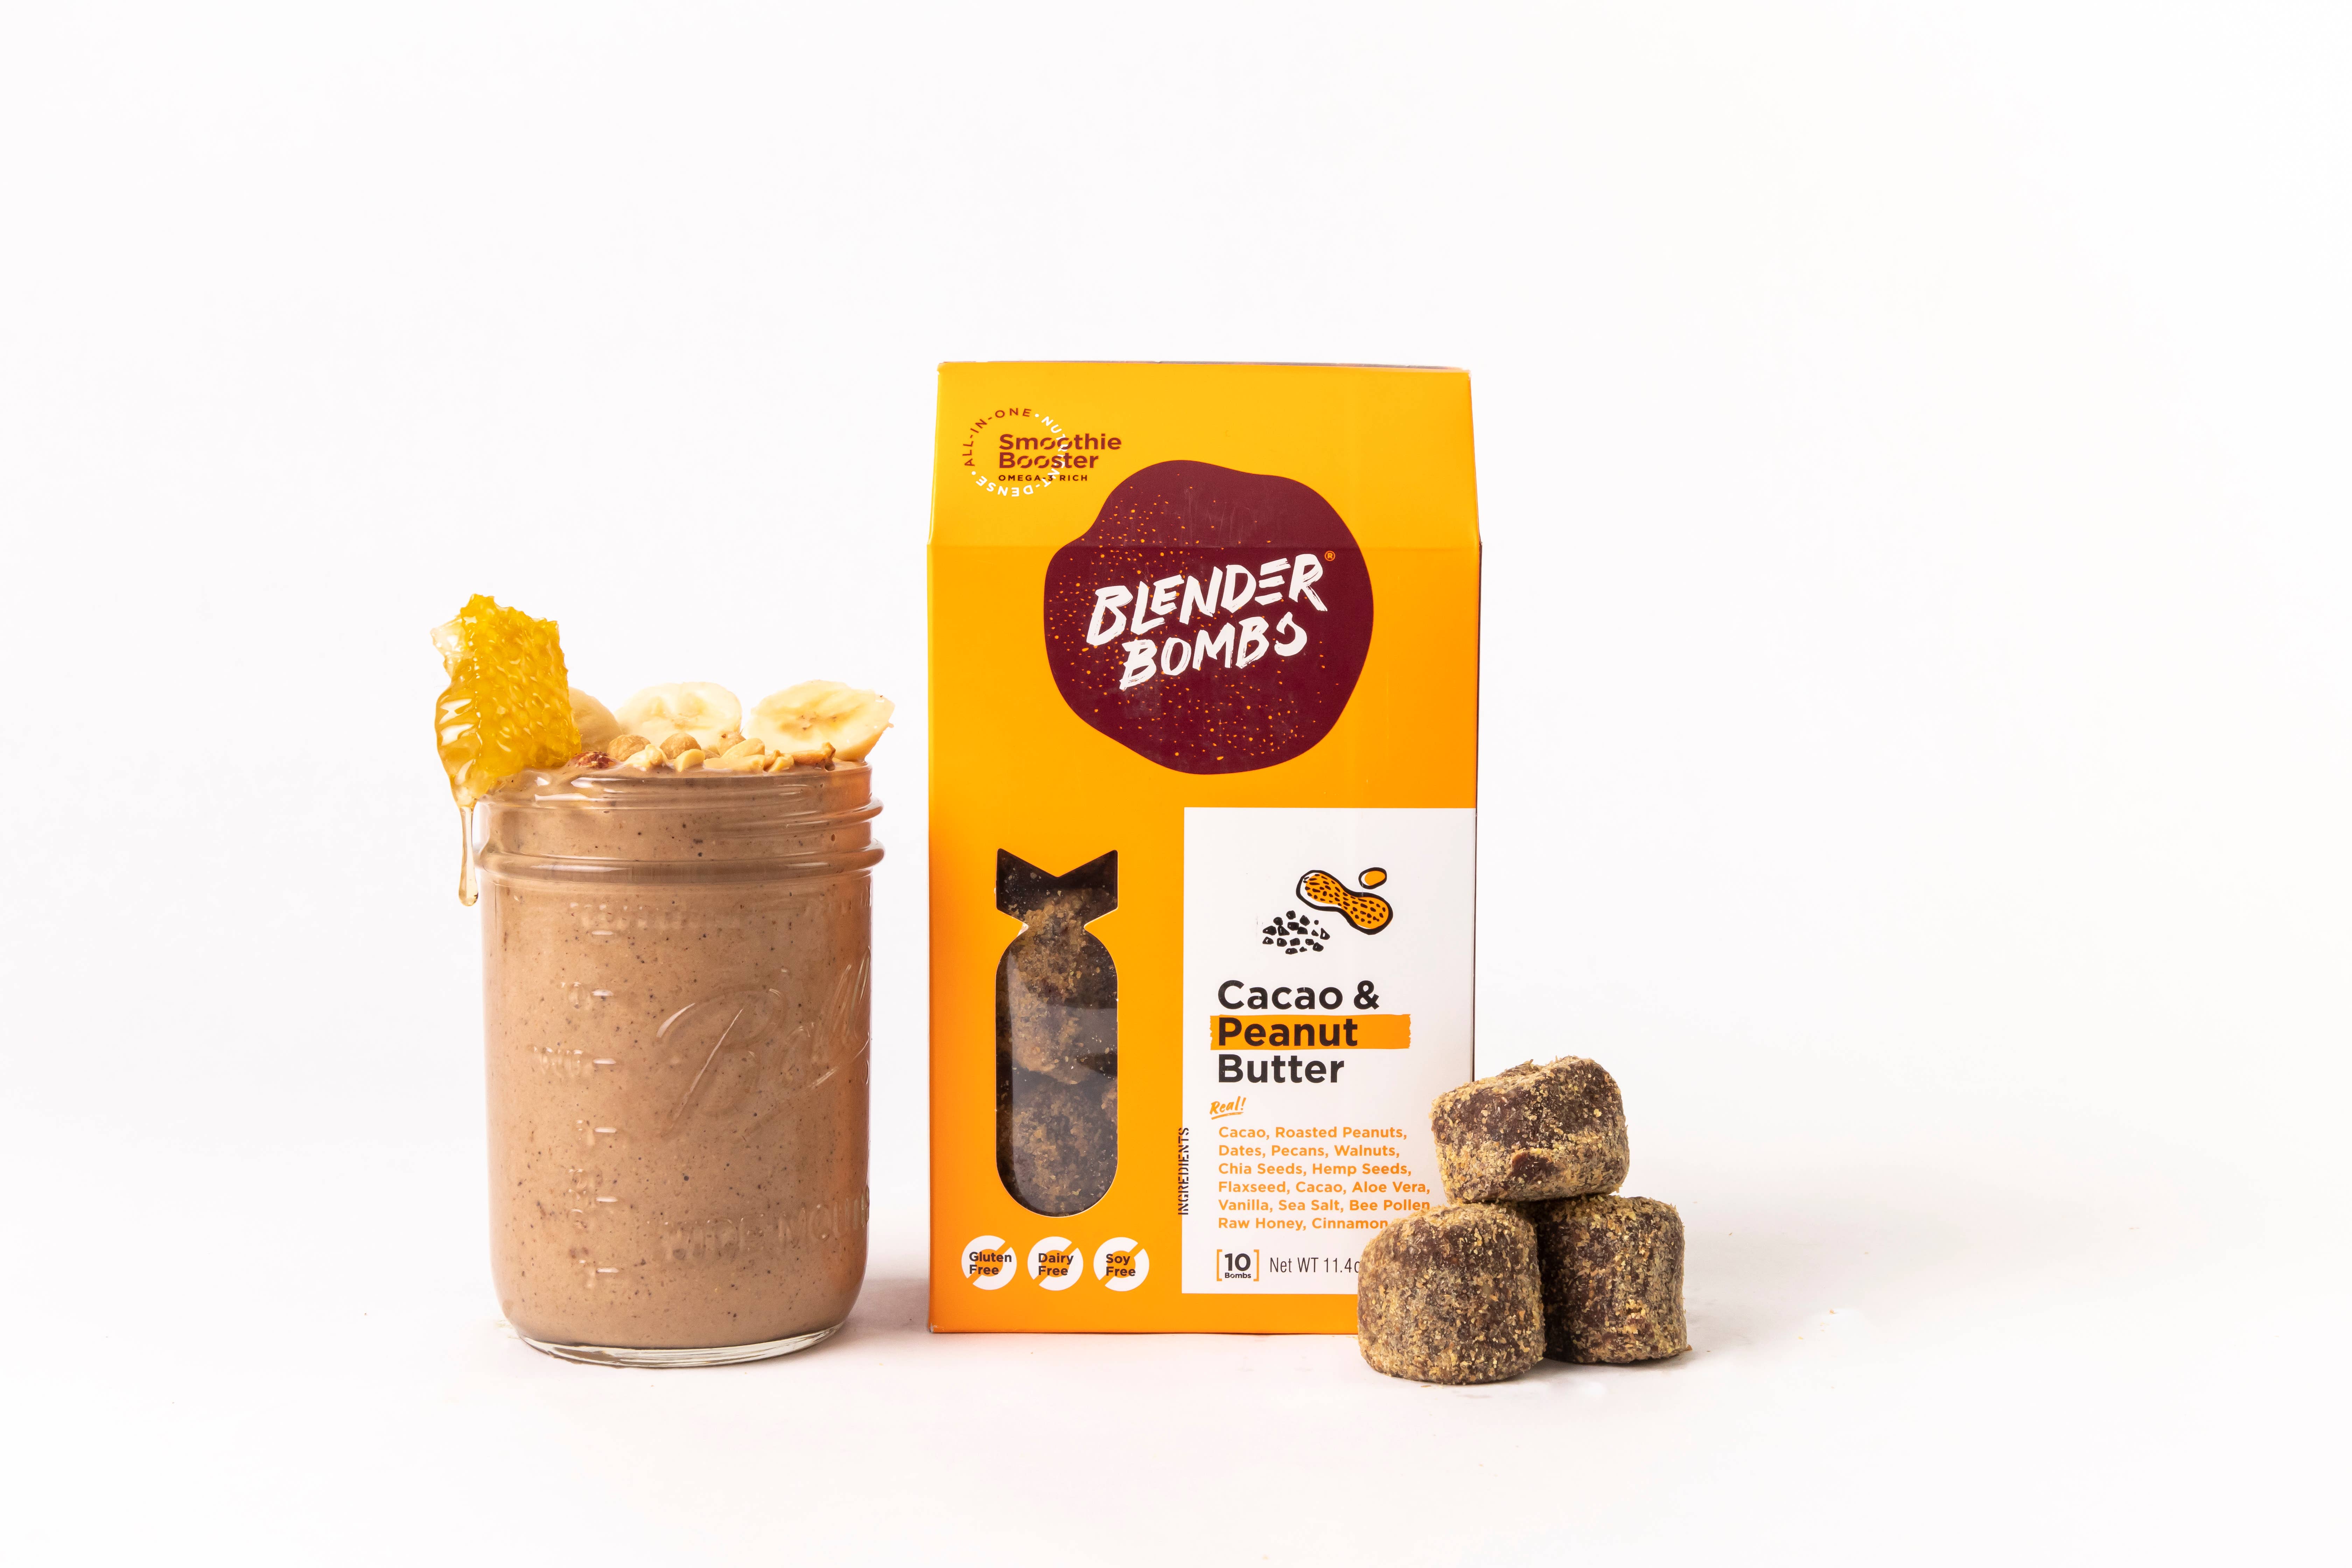 15 Blender Bomb Original Superfood Smoothie Booster Snack Plant